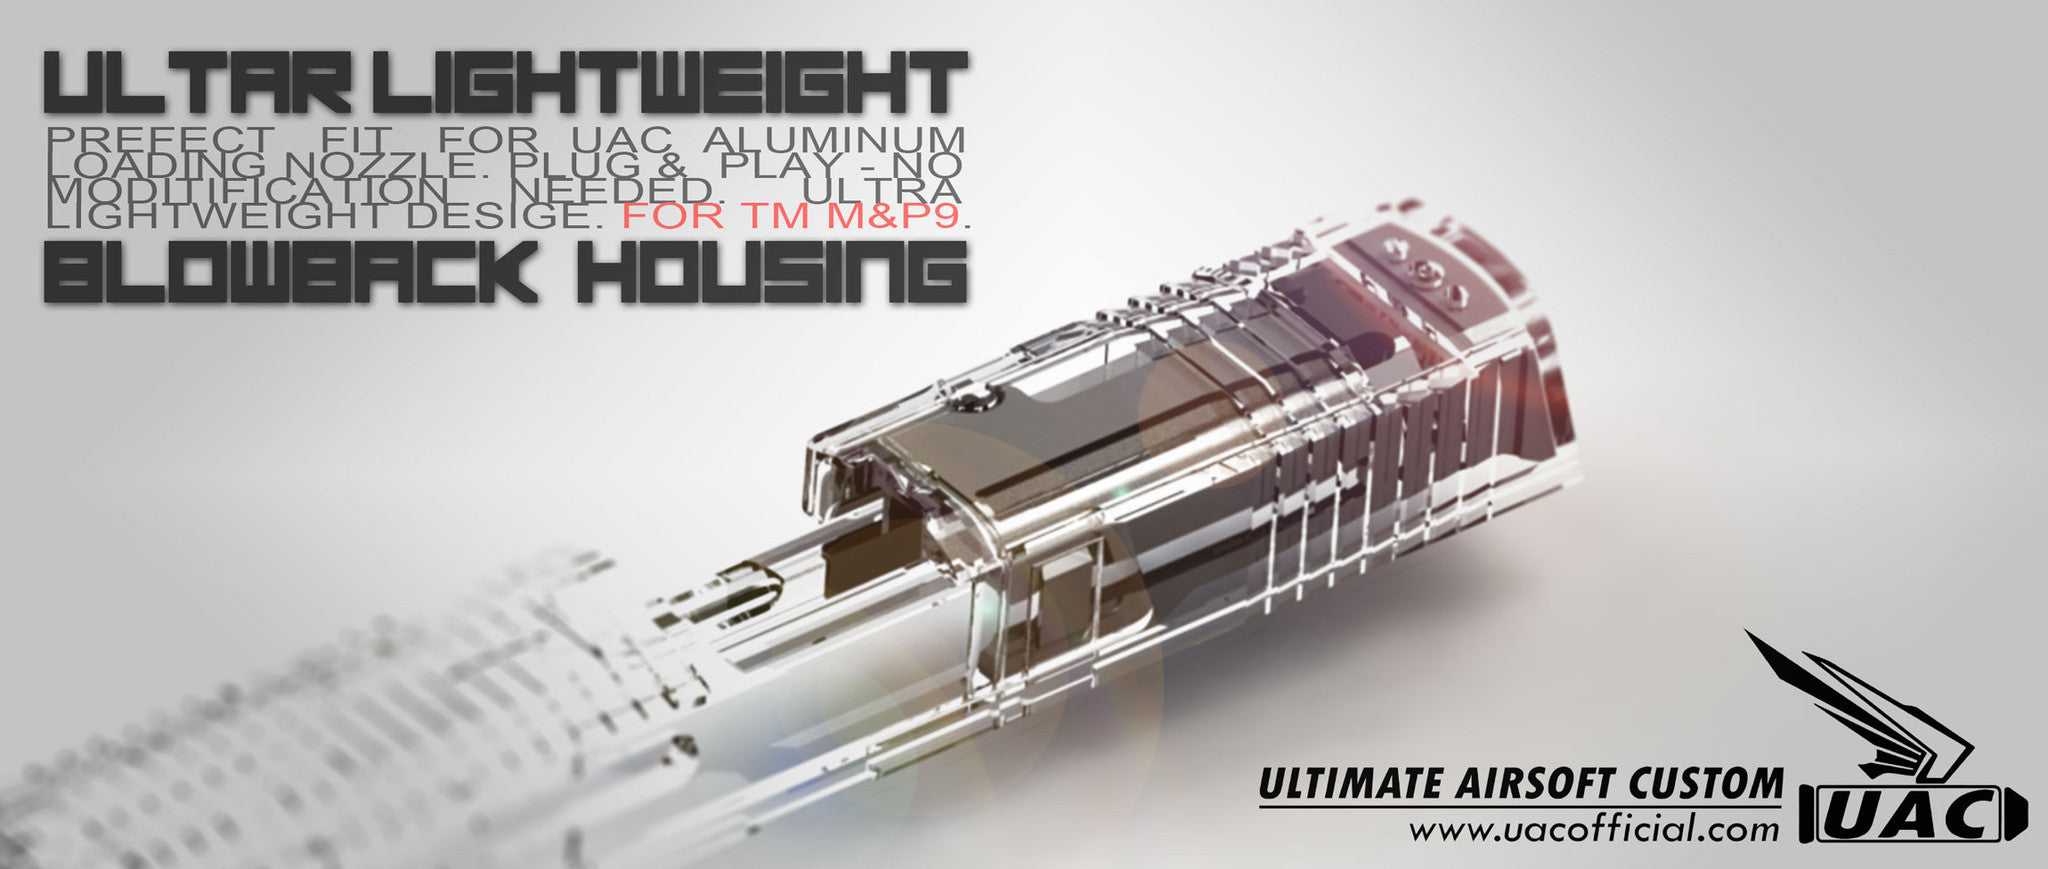 DP Ultra Lightweight Blowback Housing For TM M&P9